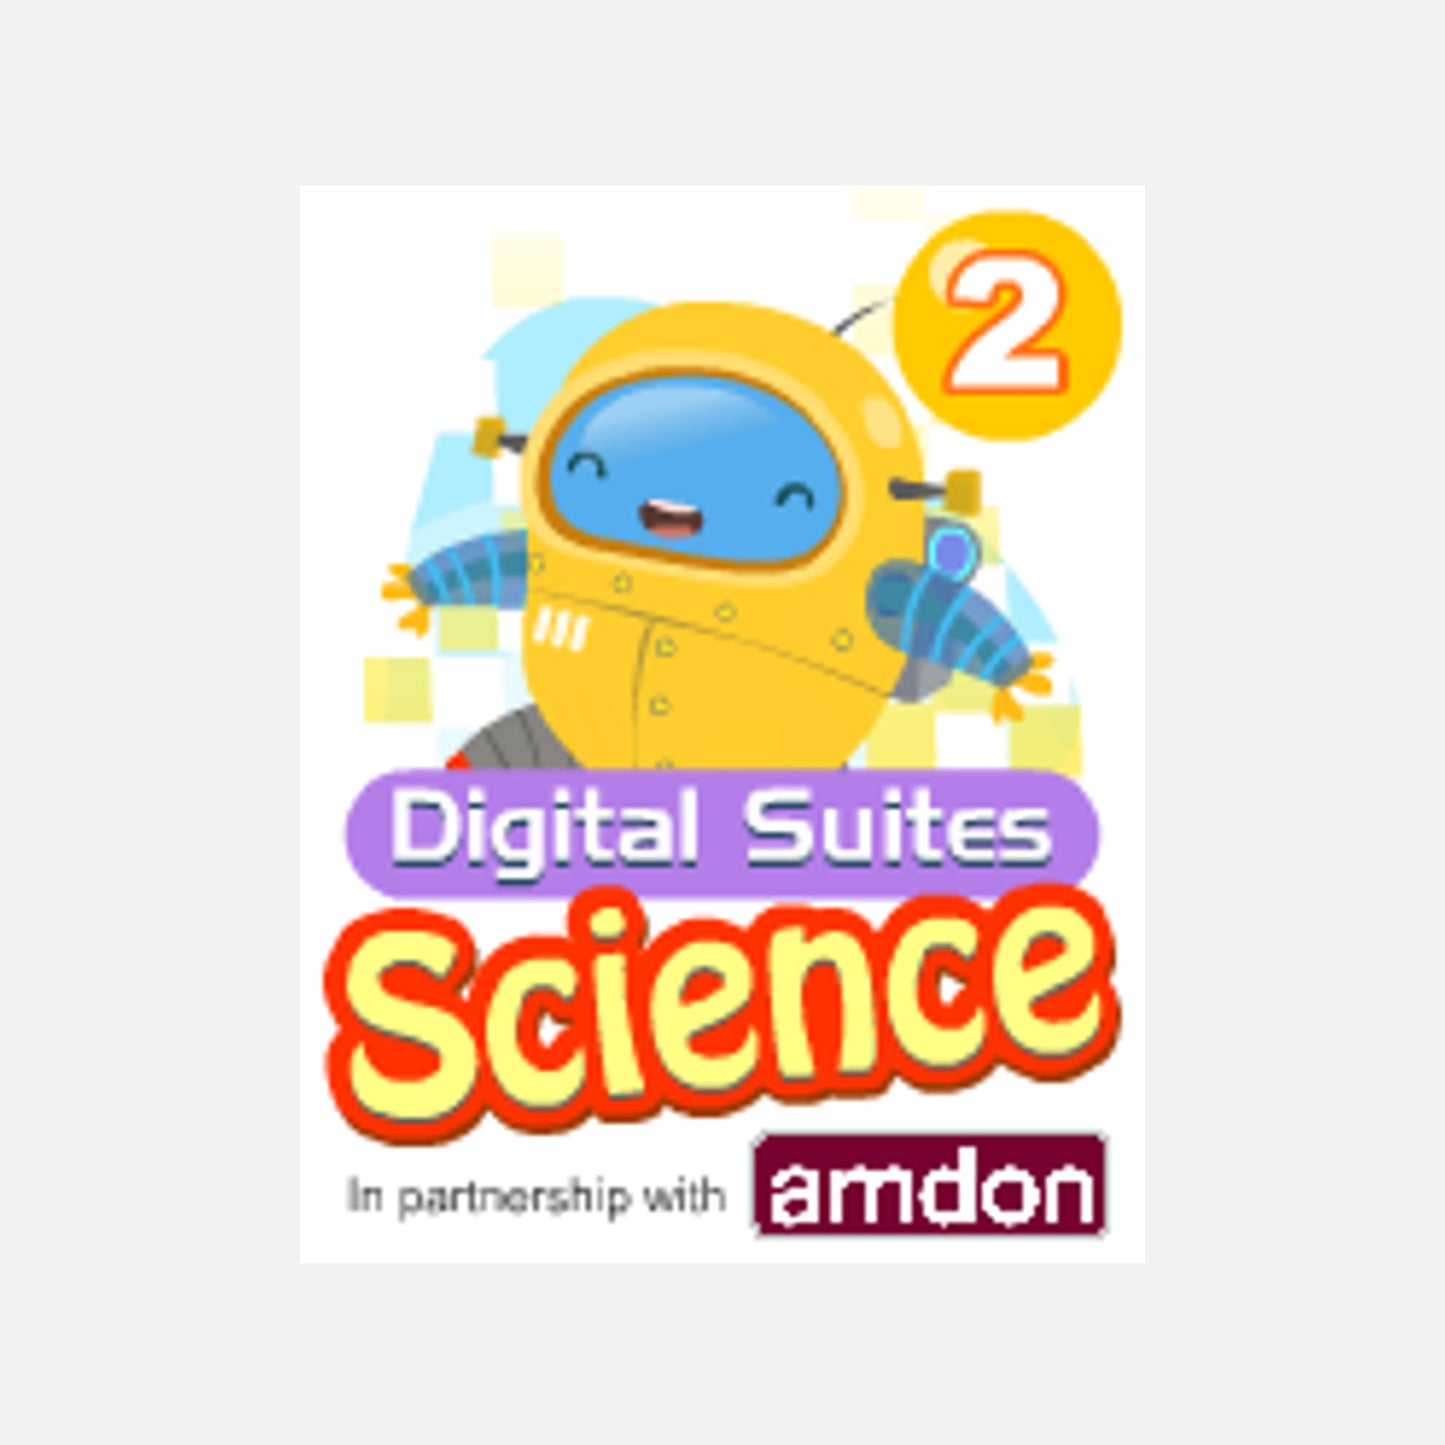 Science Digital Suites